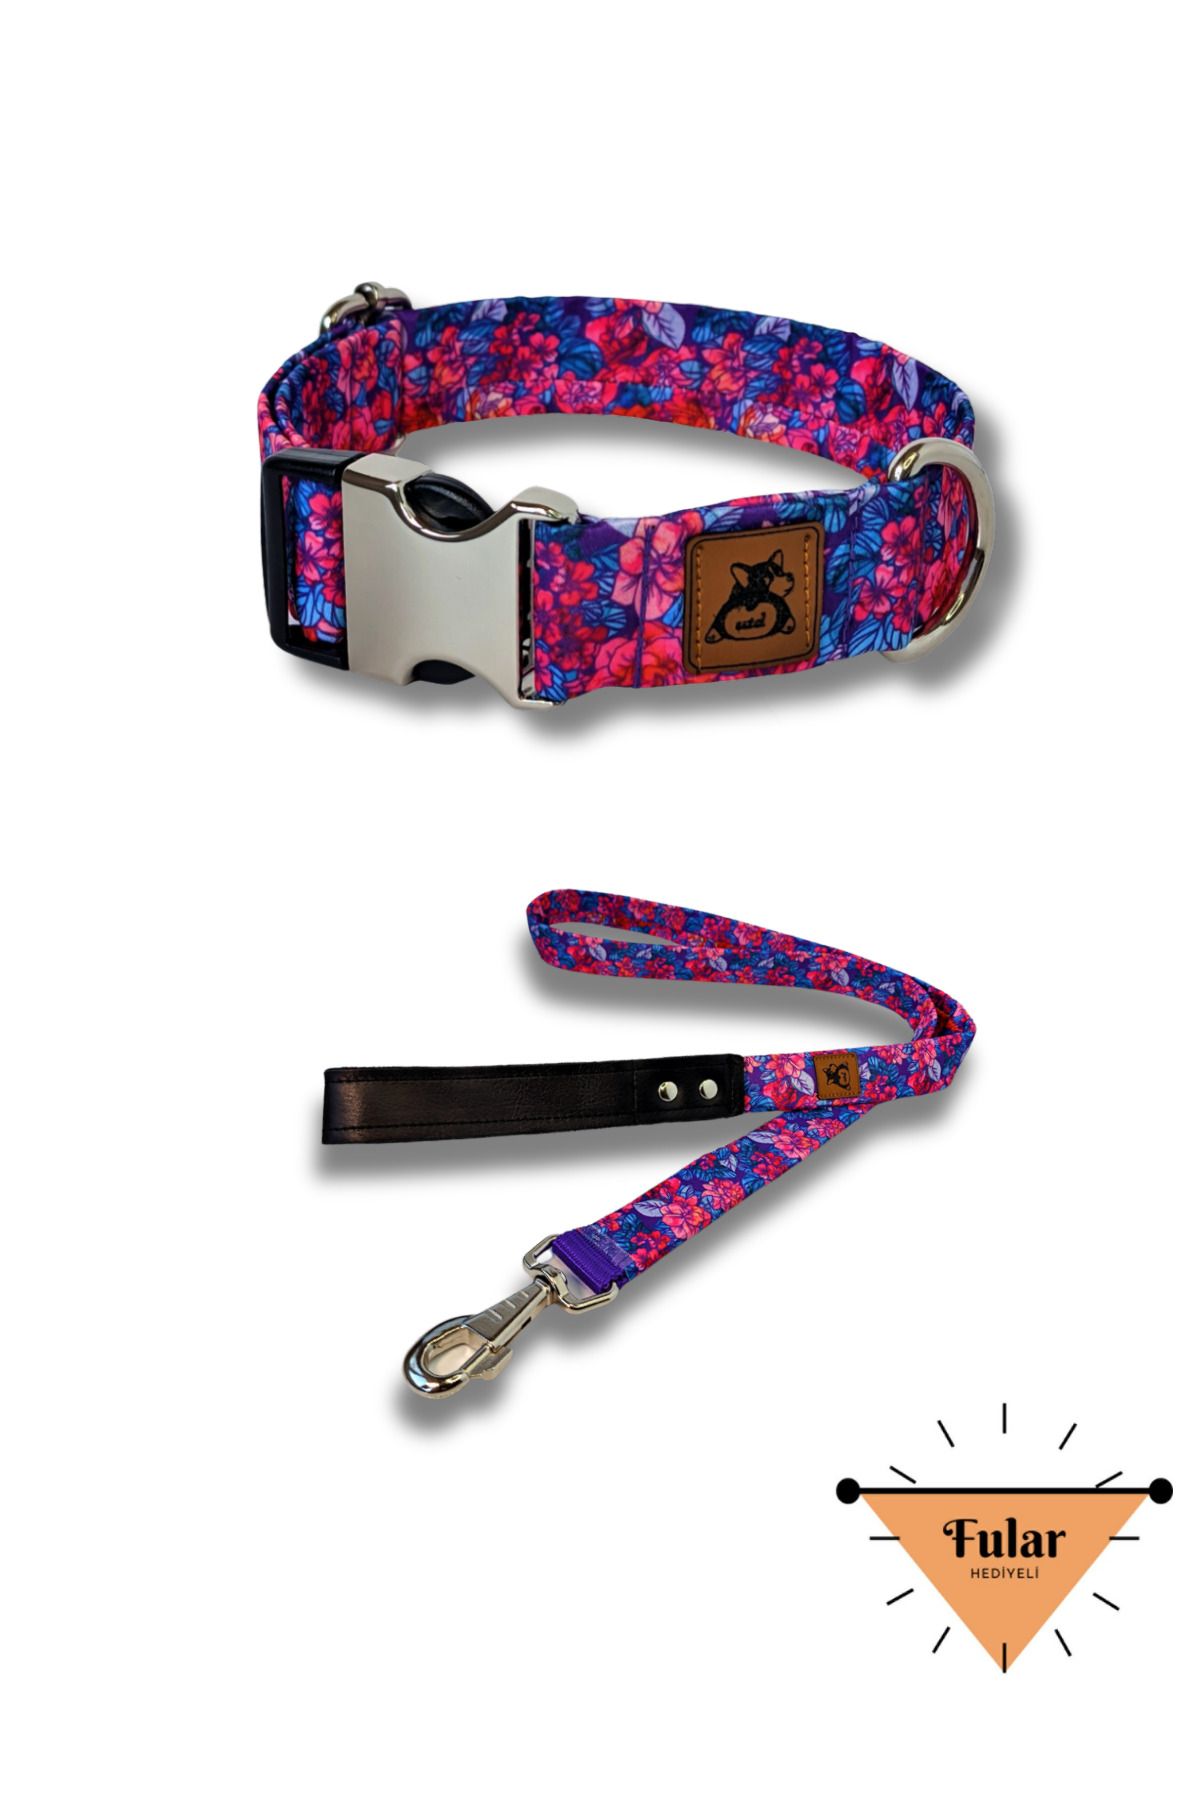 UTDpet Lilac Köpek Boyun Tasması ve Gezdirme Sevk Kayış Seti (Fular hediyeli)